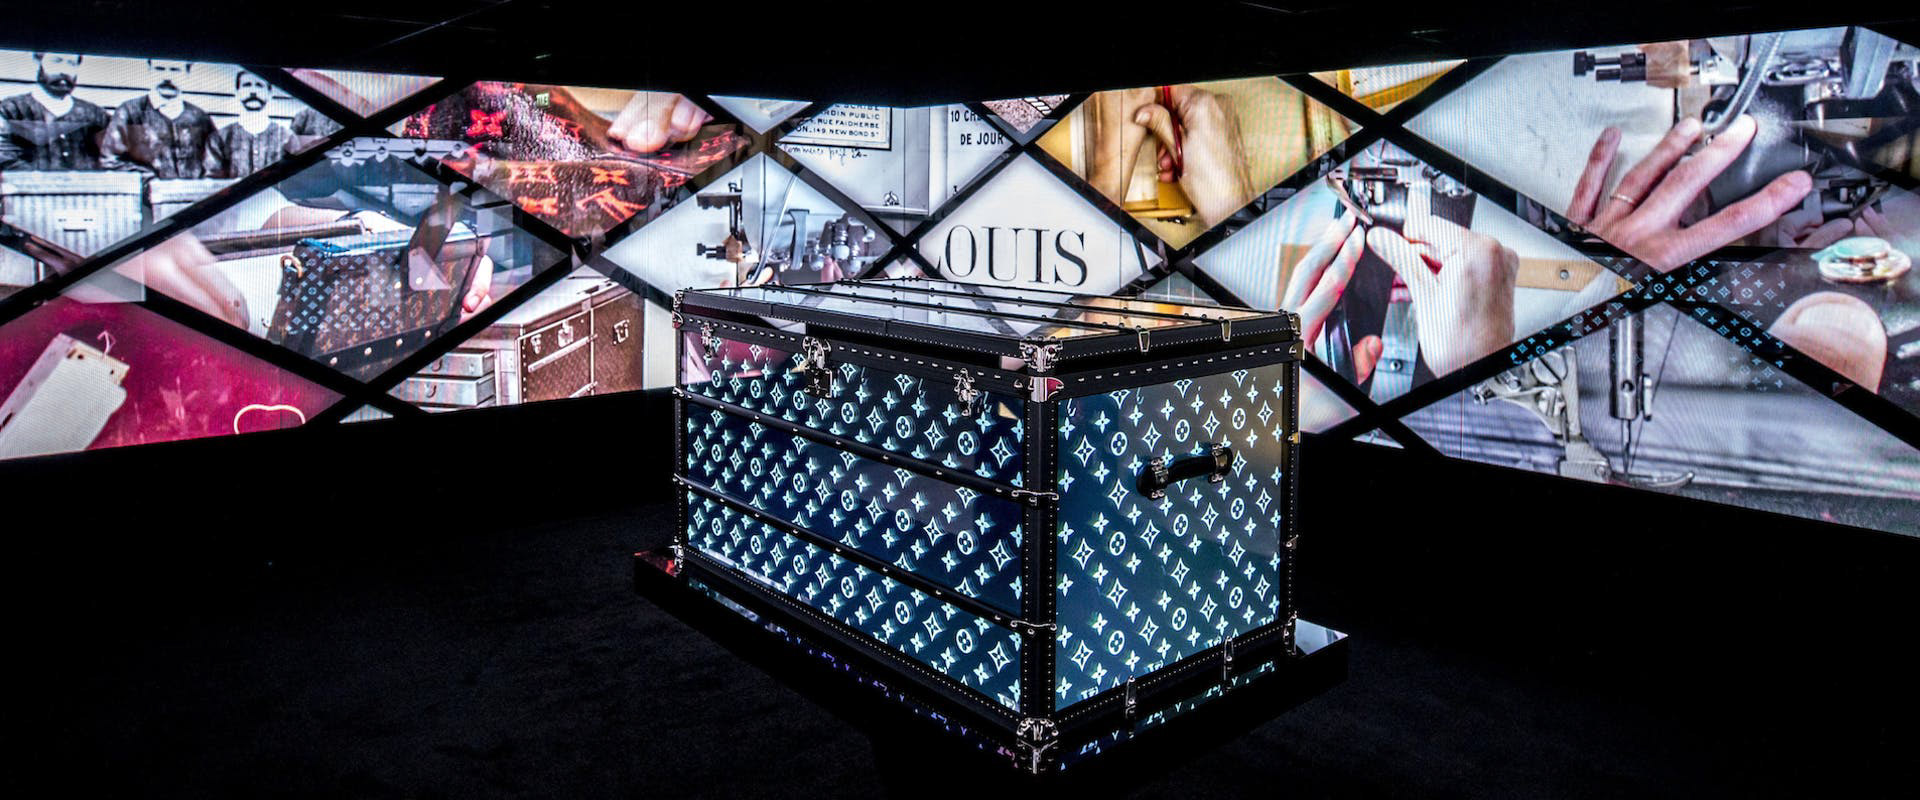 Louis Vuitton's Time Capsule